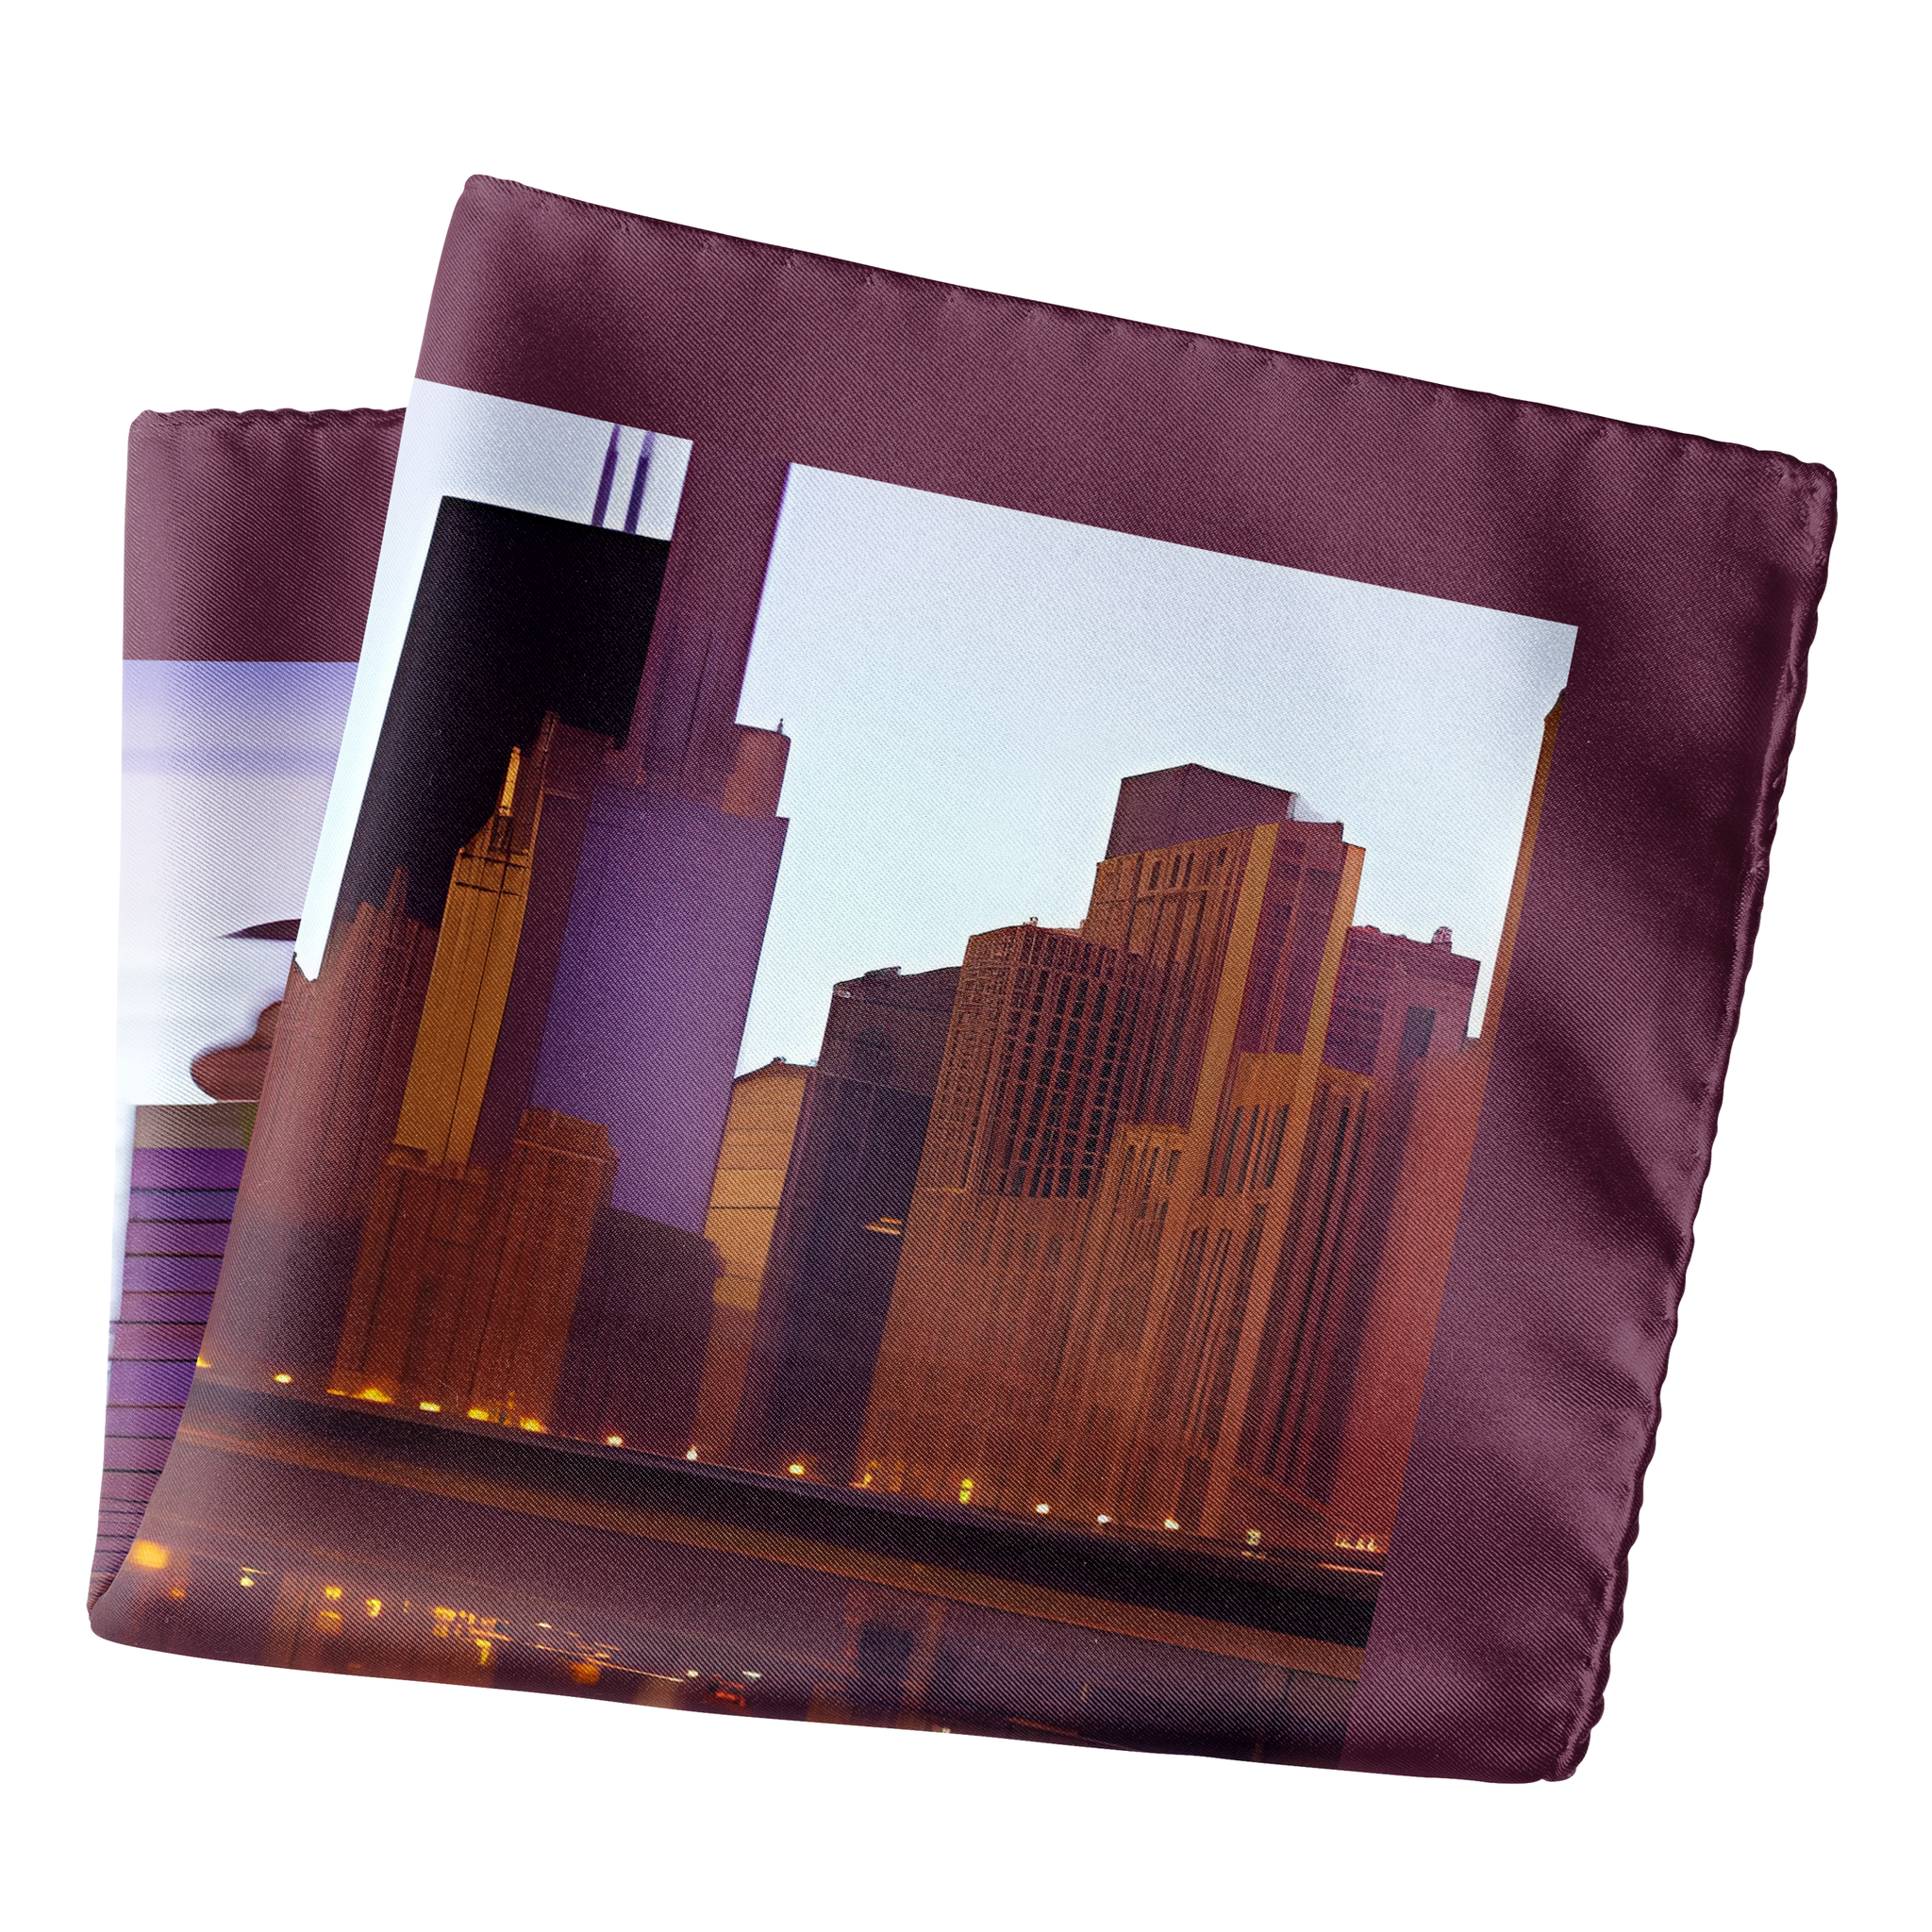 Chicago Skyline Pocket Square - Chokore Arte